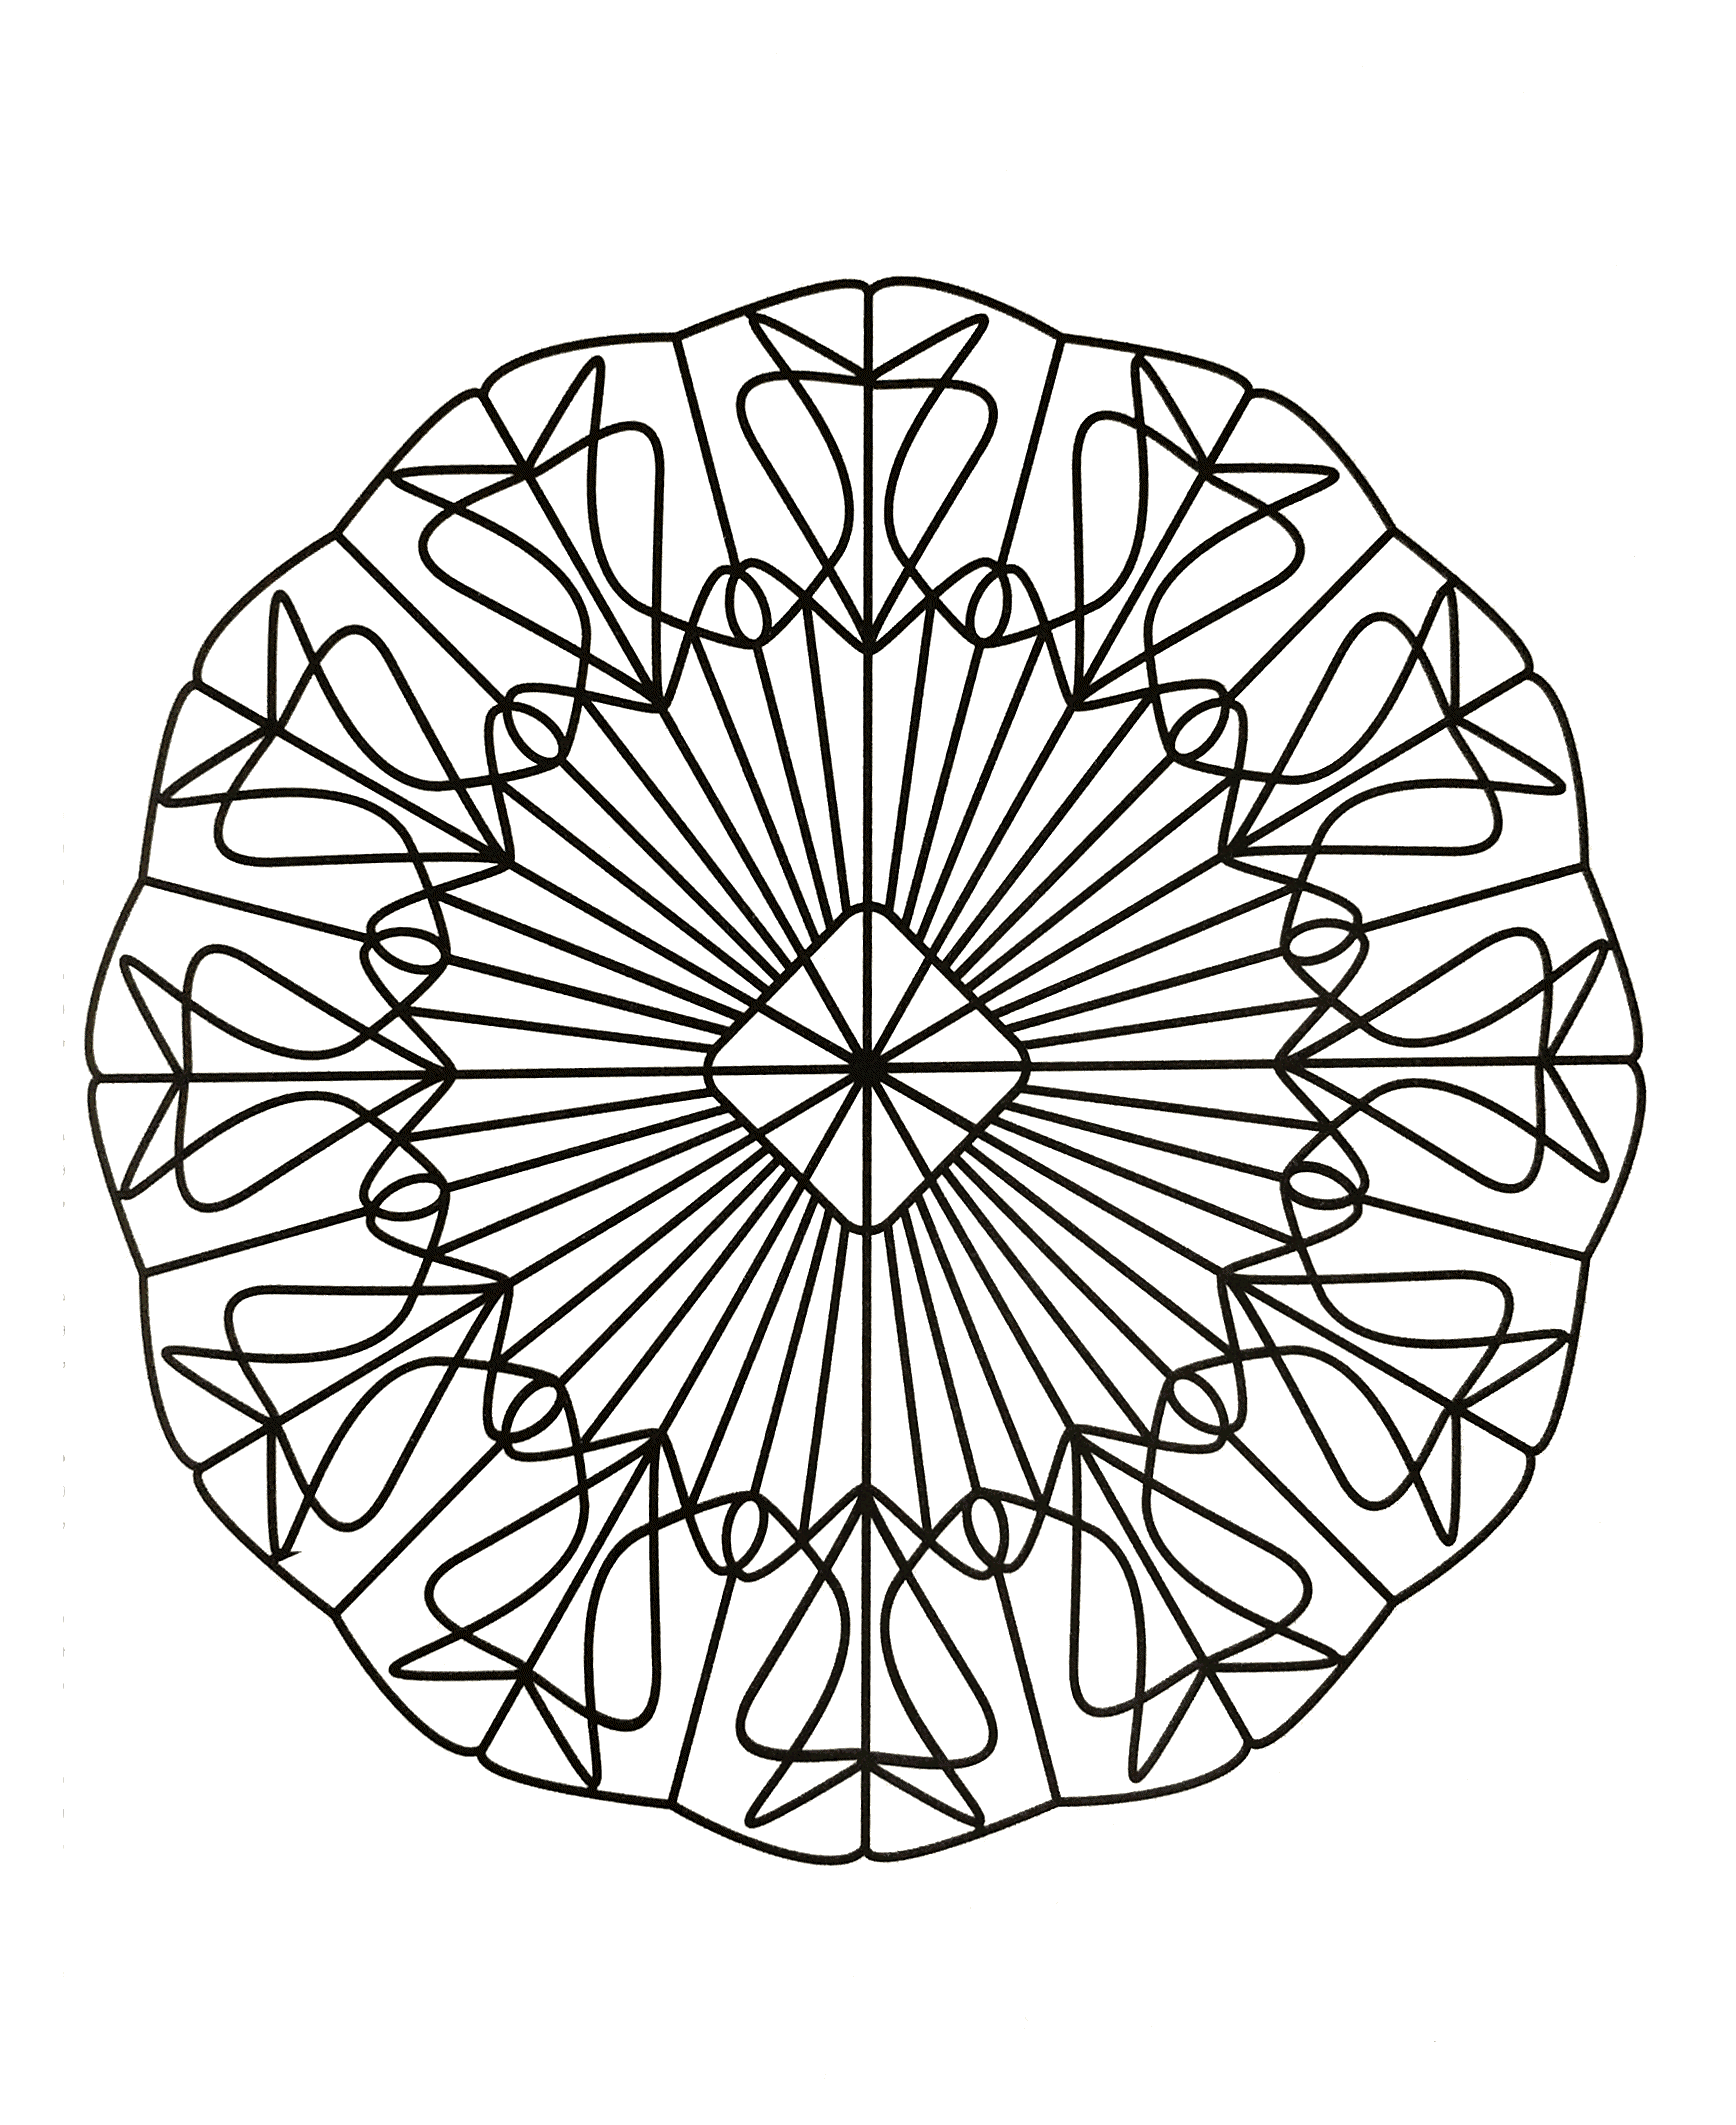 Très joli mandala à télécharger assez symétrique avec une succession de formes ainsi qu'un très joli symbole en forme de losange au centre.